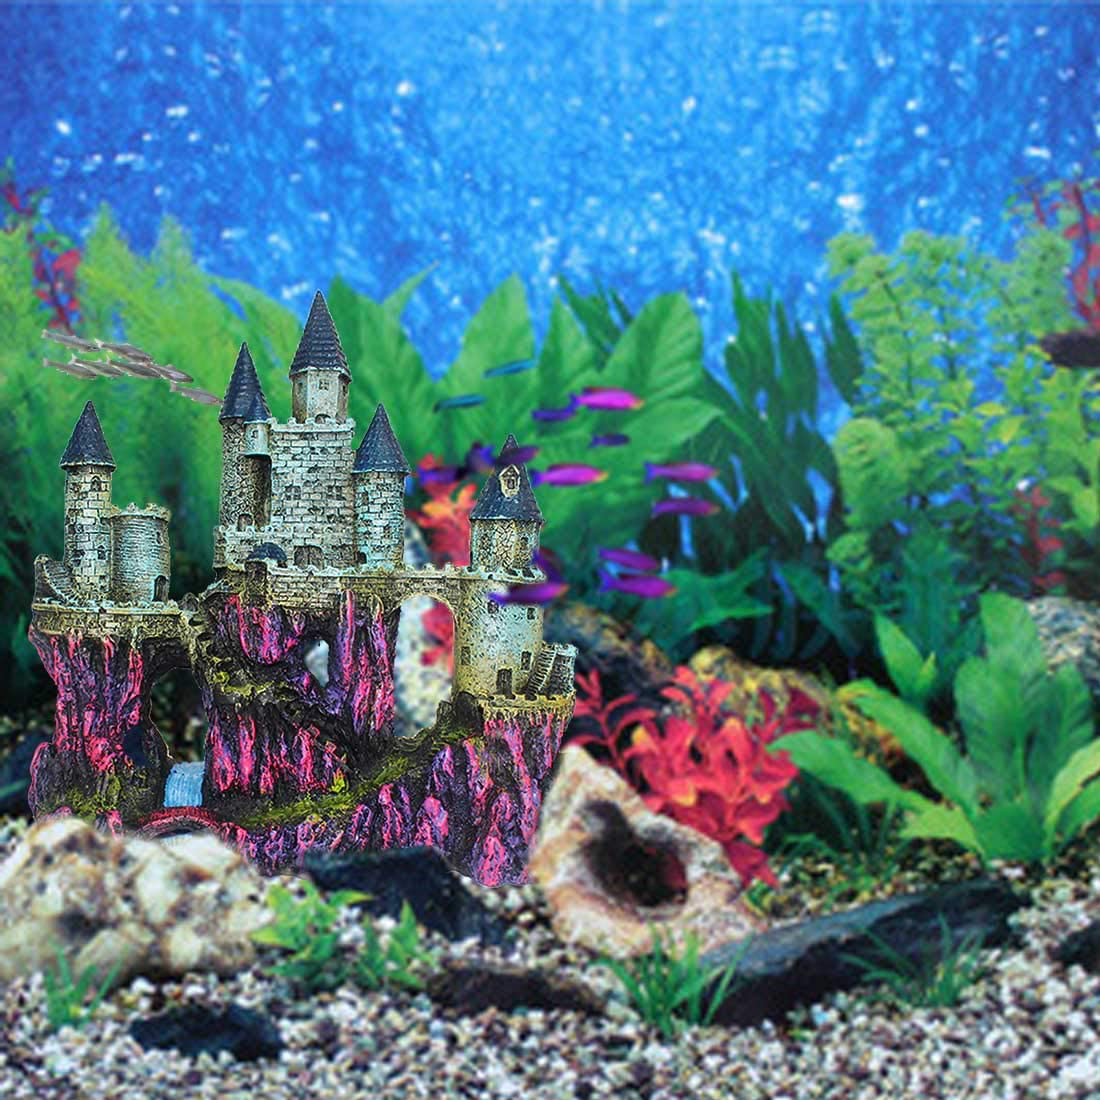 PINVNBY Aquarium Resin Castle Decoration Fish Tank Driftwood Castle Cave Hideouts House Plants Supplies Accessories(3 Pcs) Animals & Pet Supplies > Pet Supplies > Fish Supplies > Aquarium Decor PINVNBY   